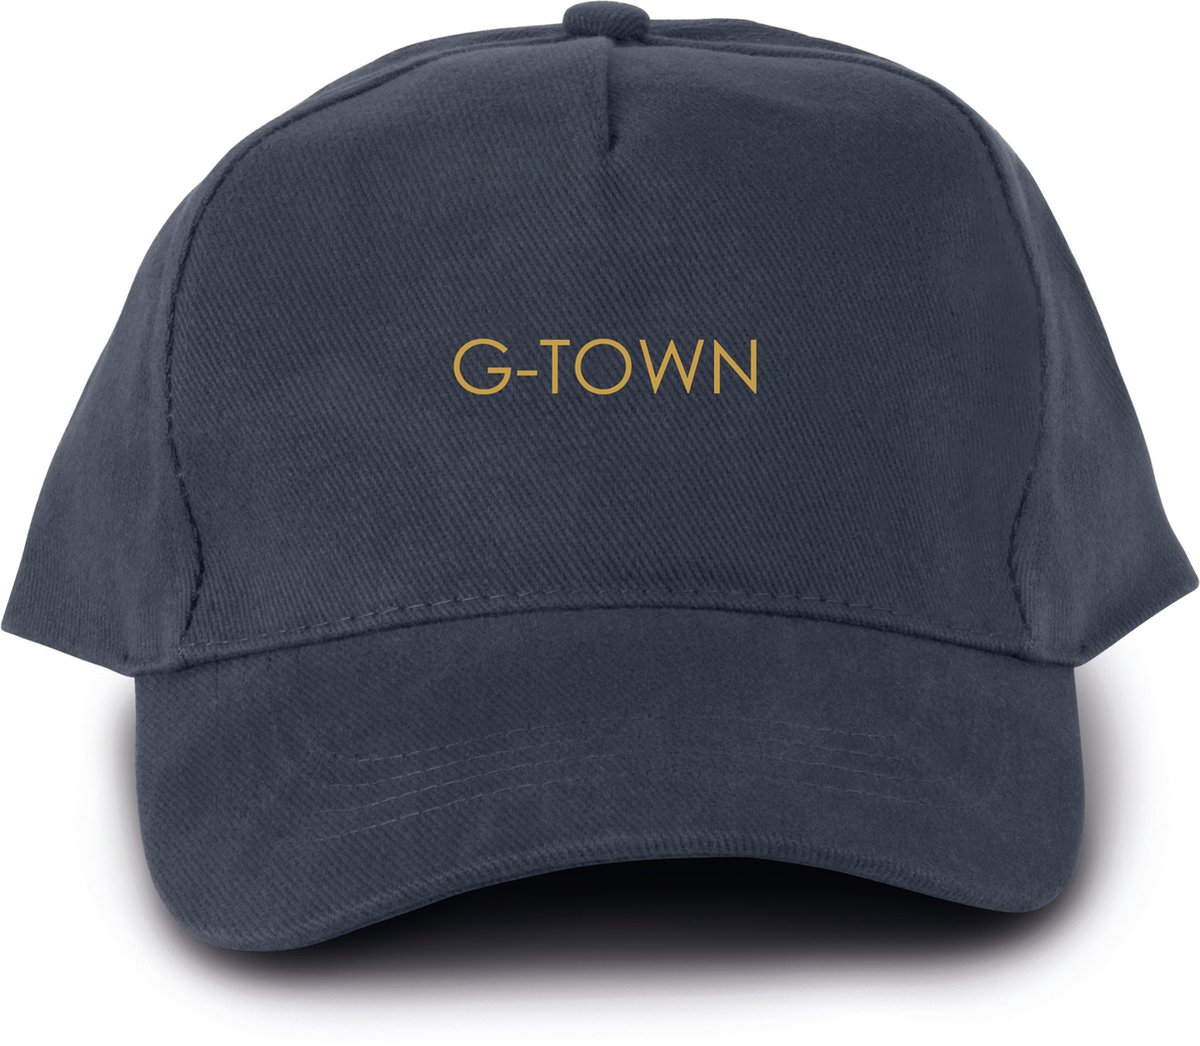 G-TOWN Baseball Cap Gold